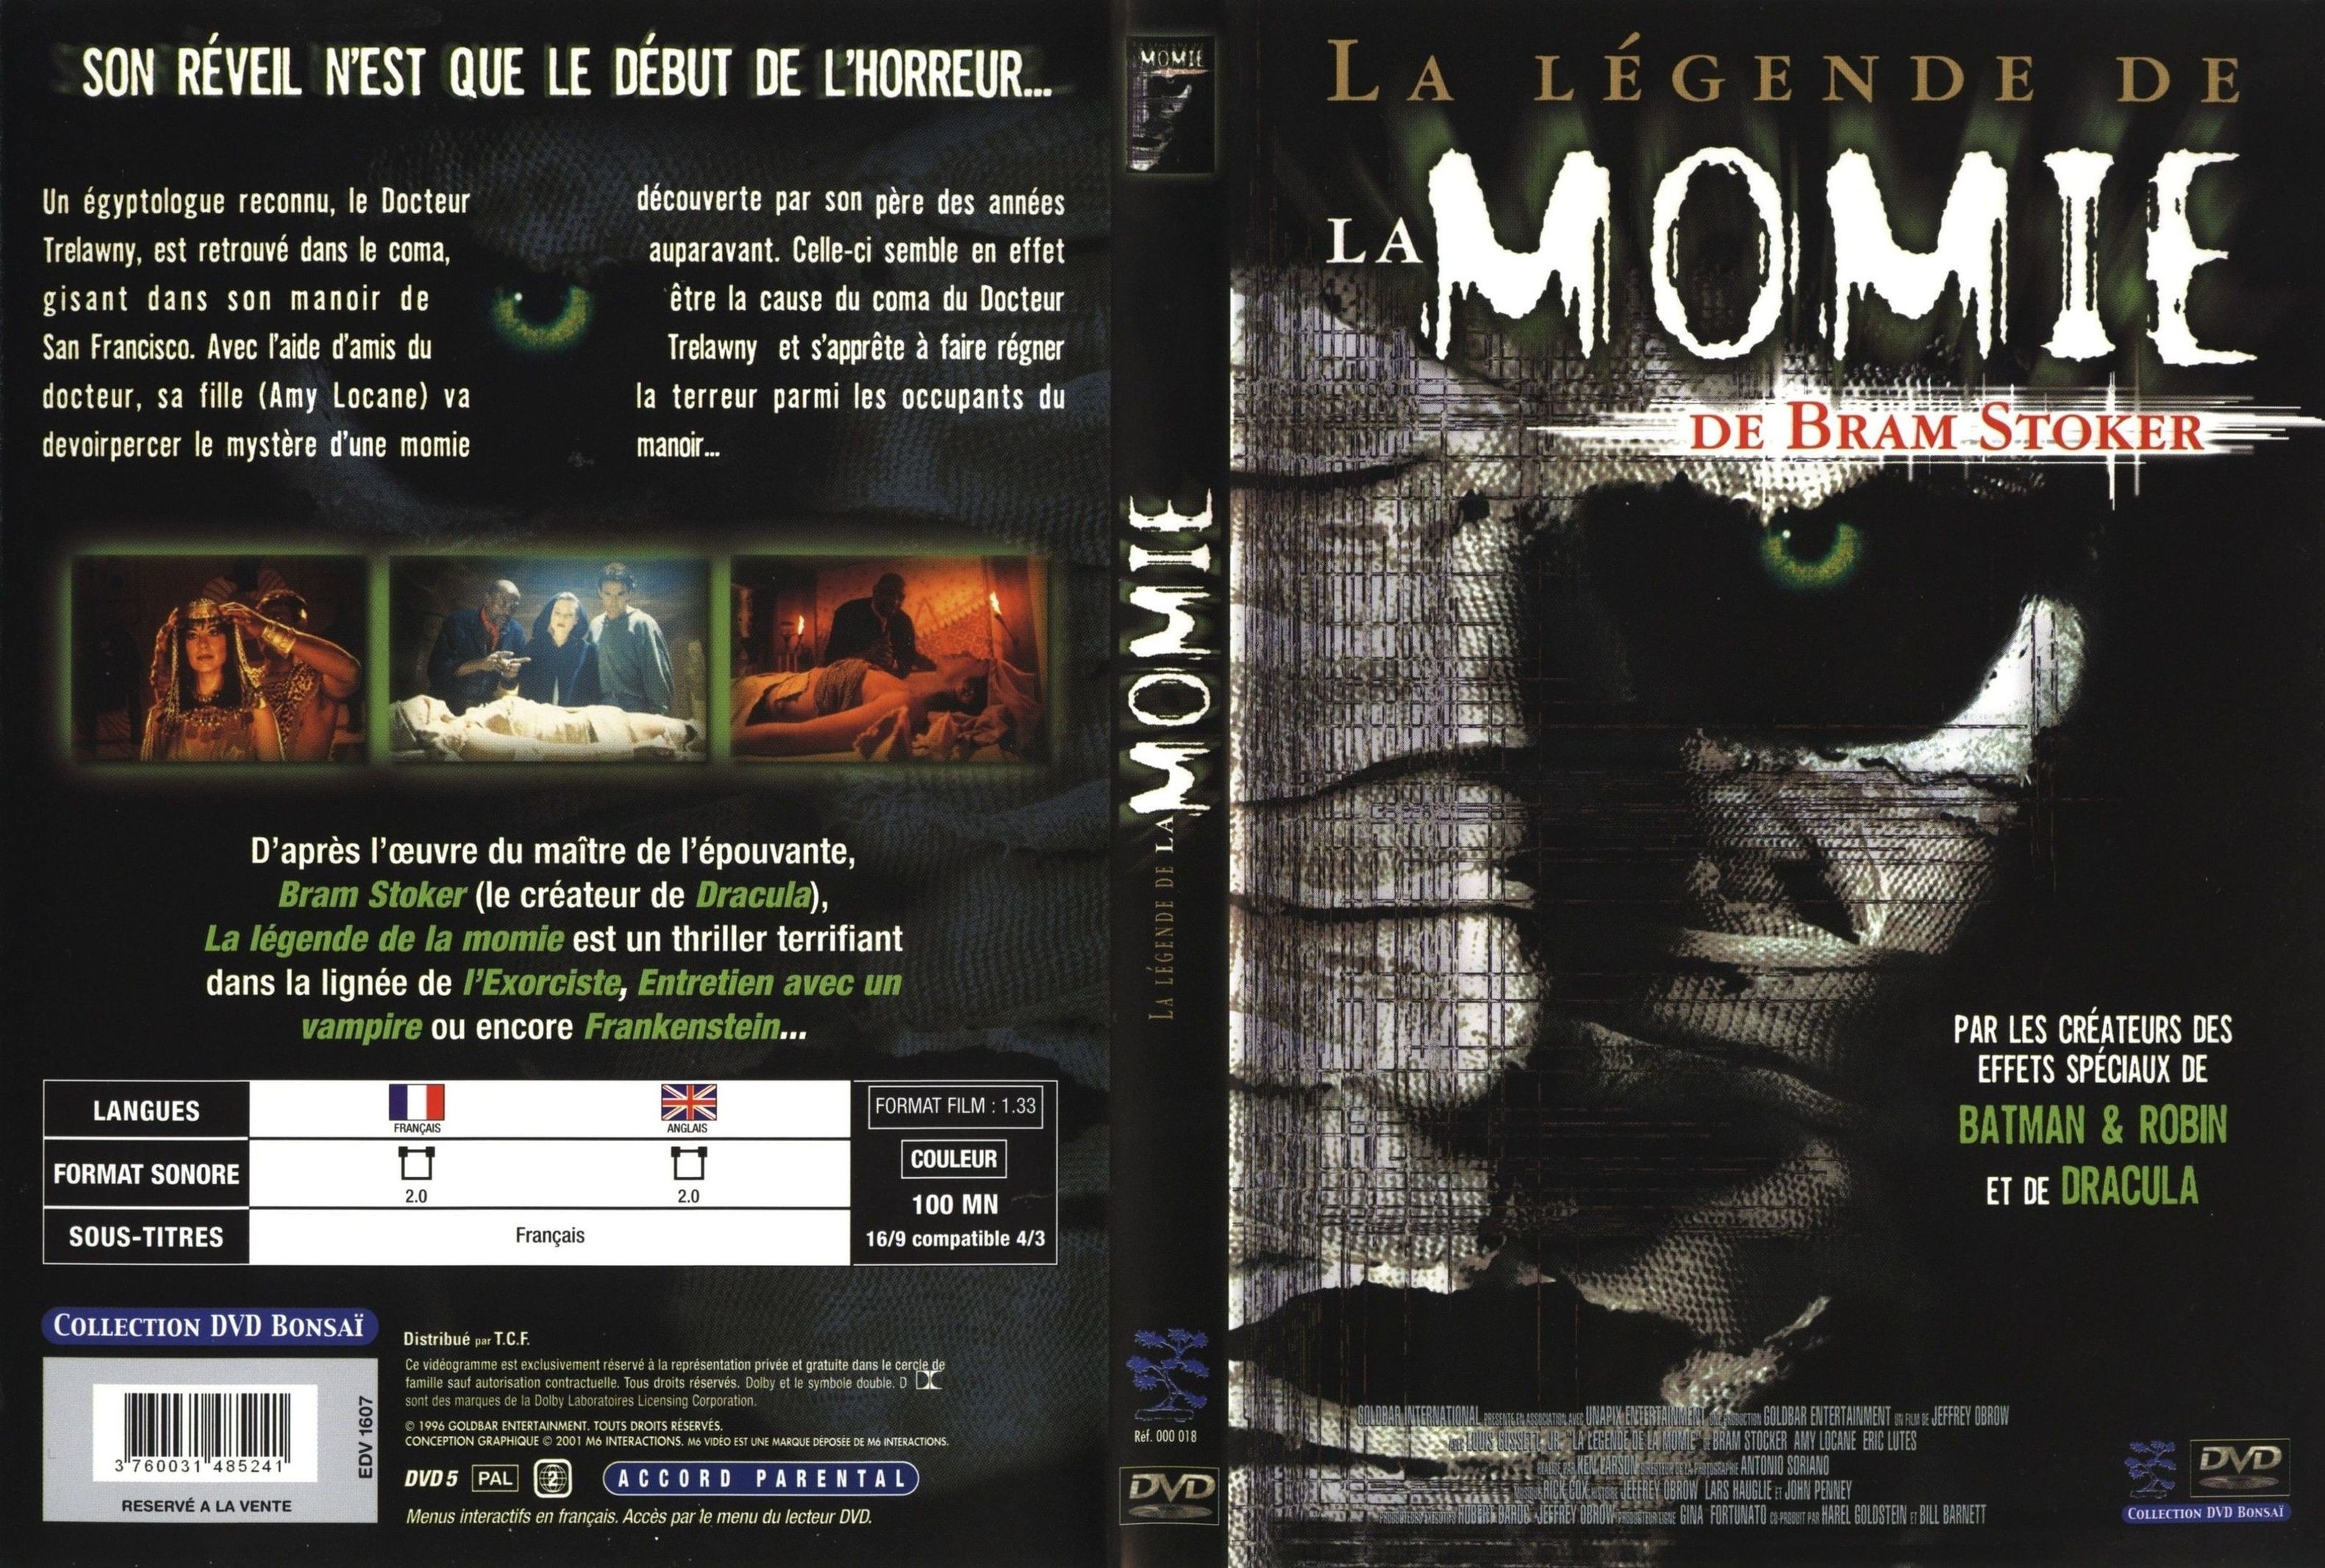 Jaquette DVD La lgende de la momie